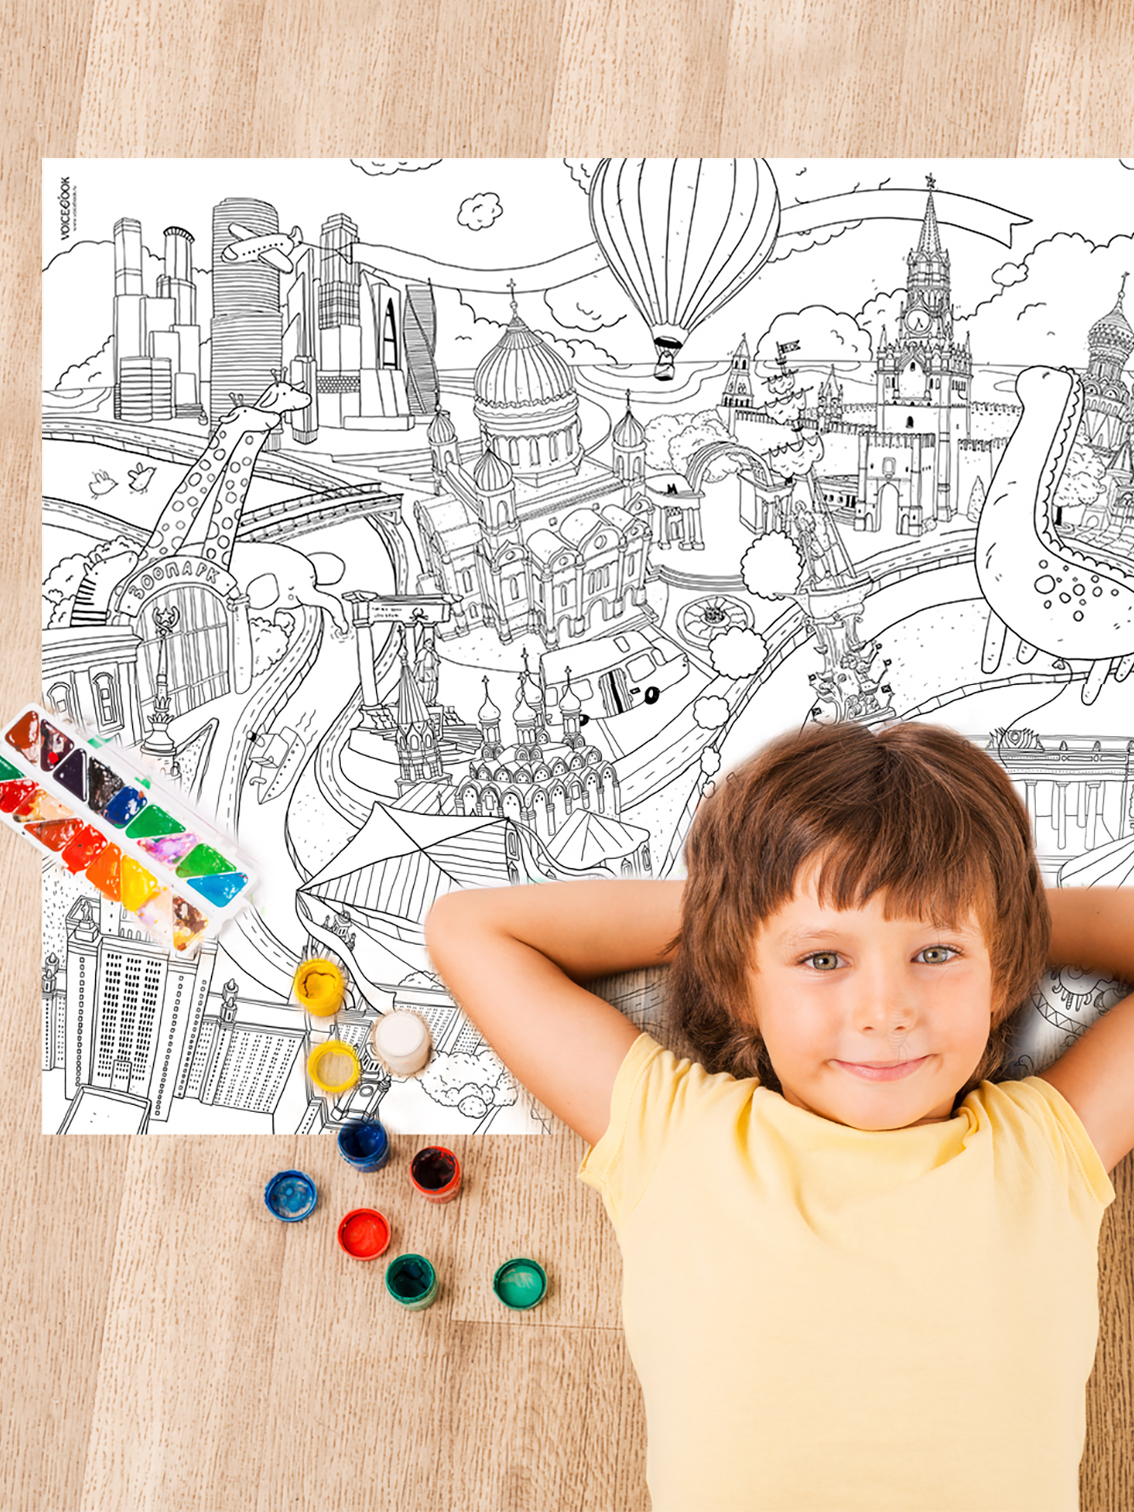 От стресса и для развития: как выбрать раскраски для ребенка по возрасту